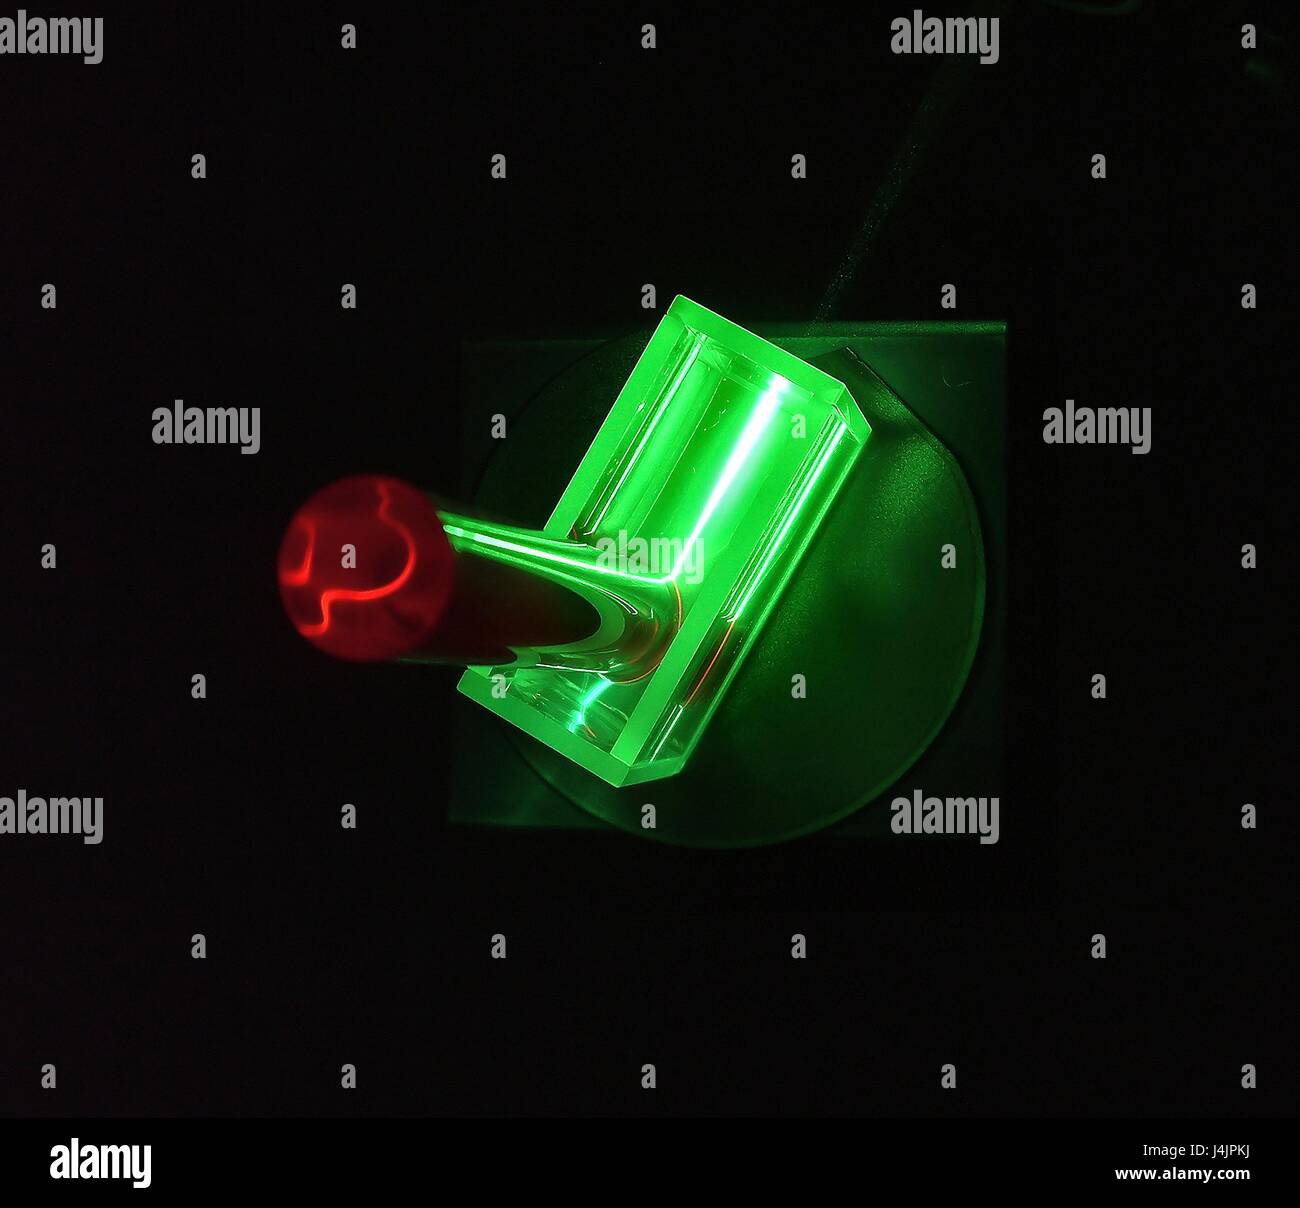 Láser de rubí y la varilla. Experimento con un rayo de láser verde se  utiliza para inducir la luminiscencia de color rojo en una varilla de rubí  artificial. El rayo láser también